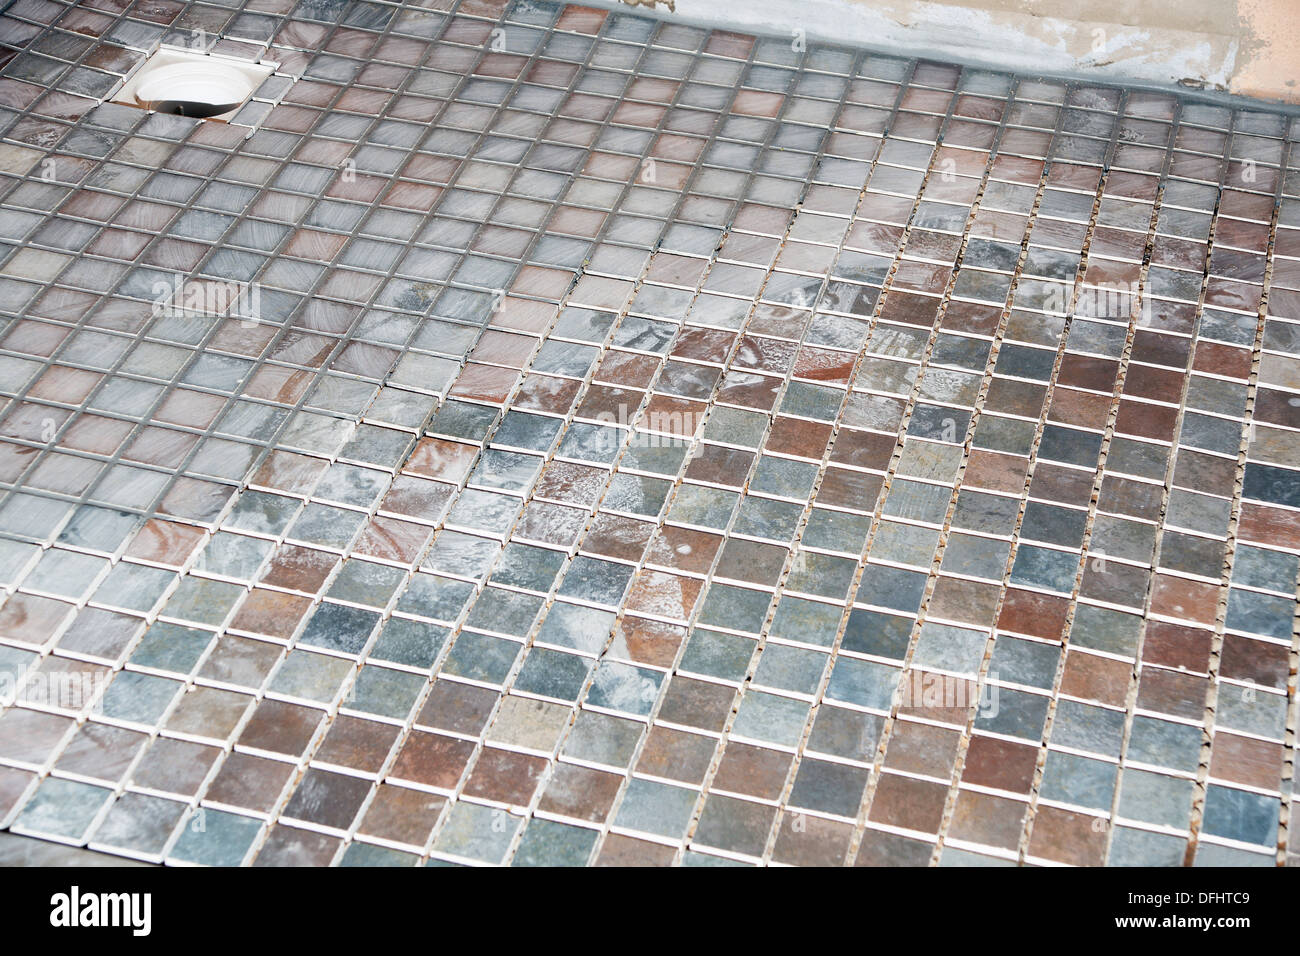 Antiscivolo per piastrelle utilizzate per la pavimentazione in una camera umida (bagno doccia) adatto per disabili con facile accesso Foto Stock